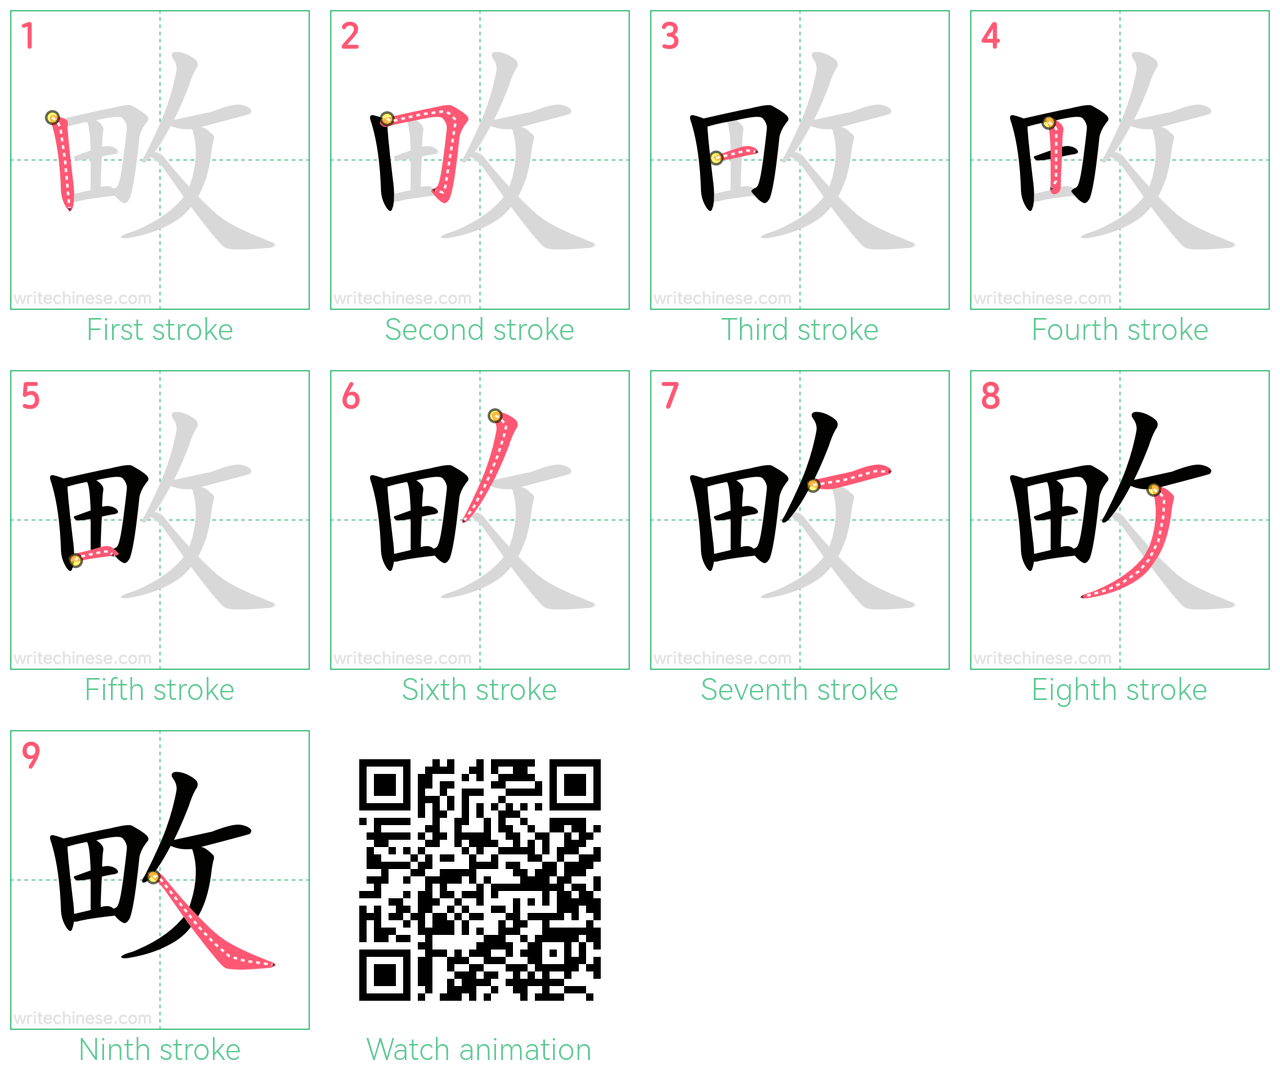 畋 step-by-step stroke order diagrams